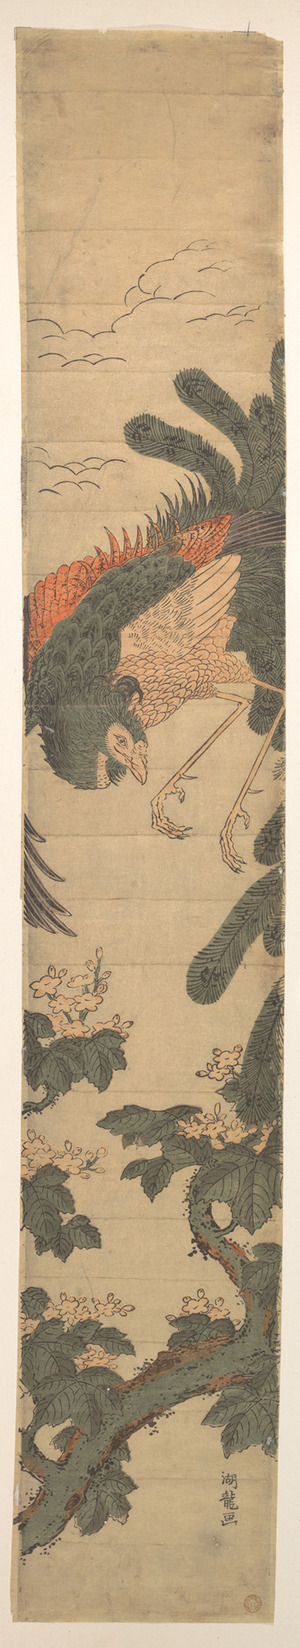 磯田湖龍齋: Phoenix Flying Over a Paulownia Tree - メトロポリタン美術館